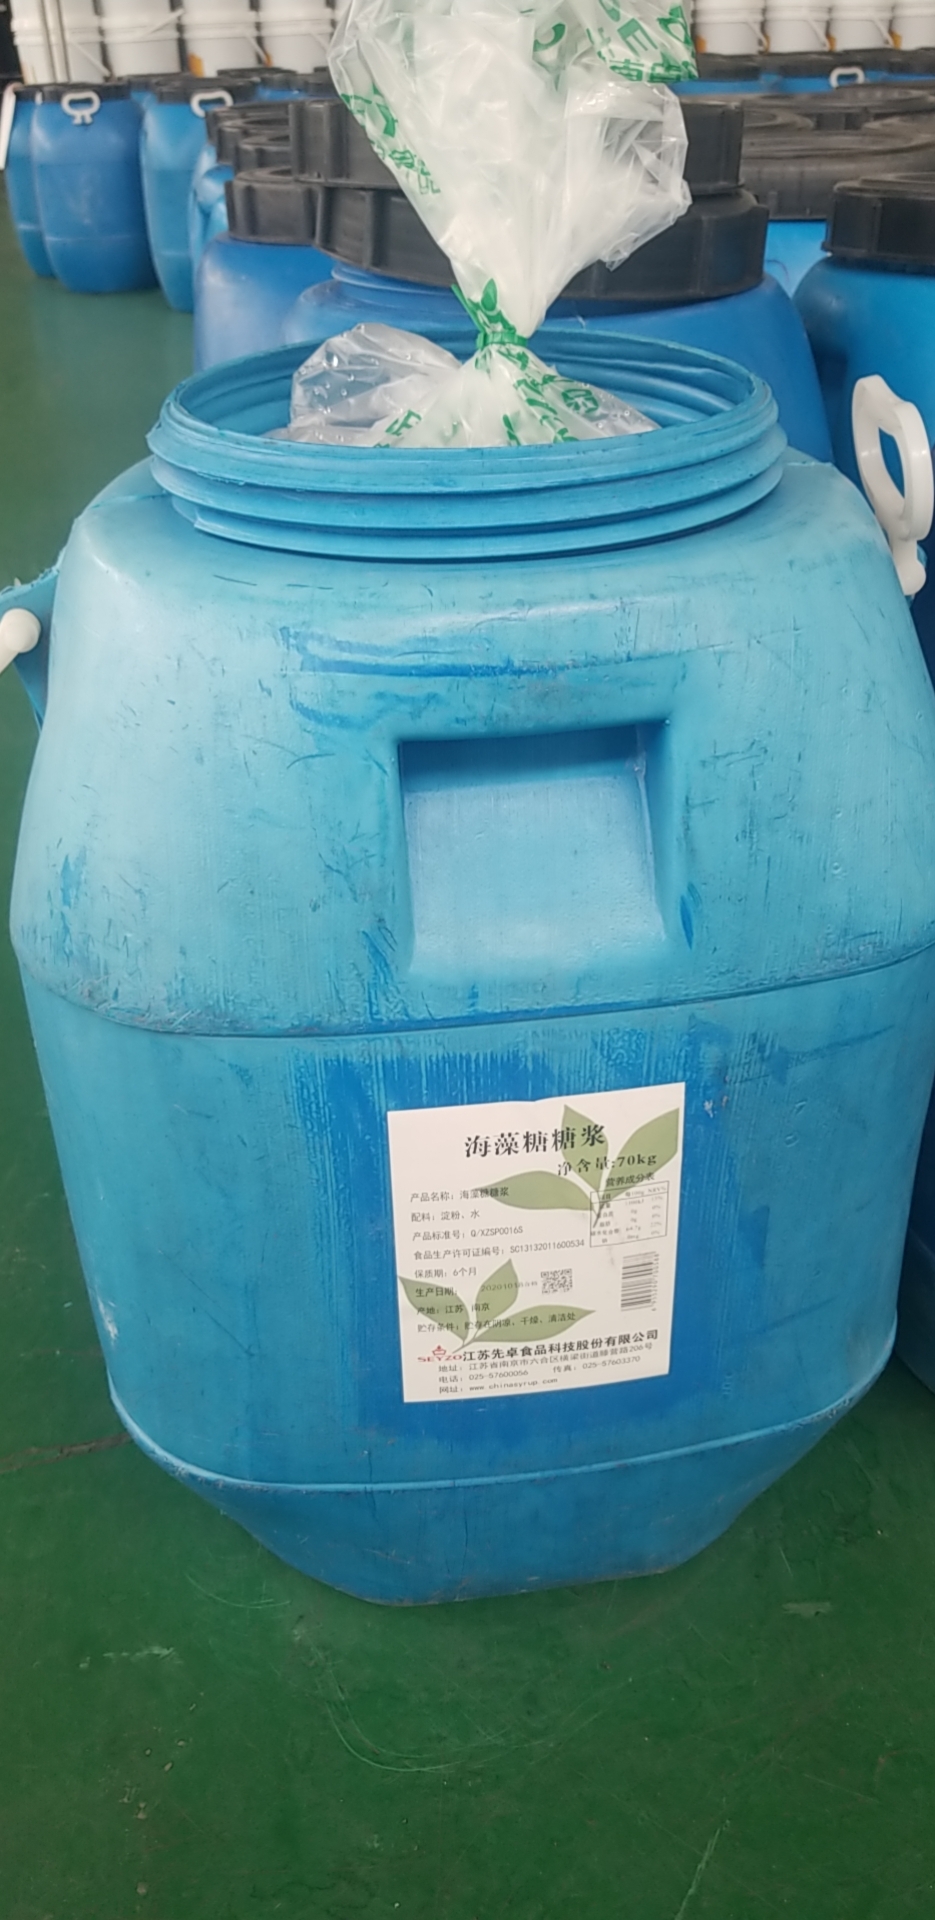 海藻糖糖浆70kg桶 (1).jpg